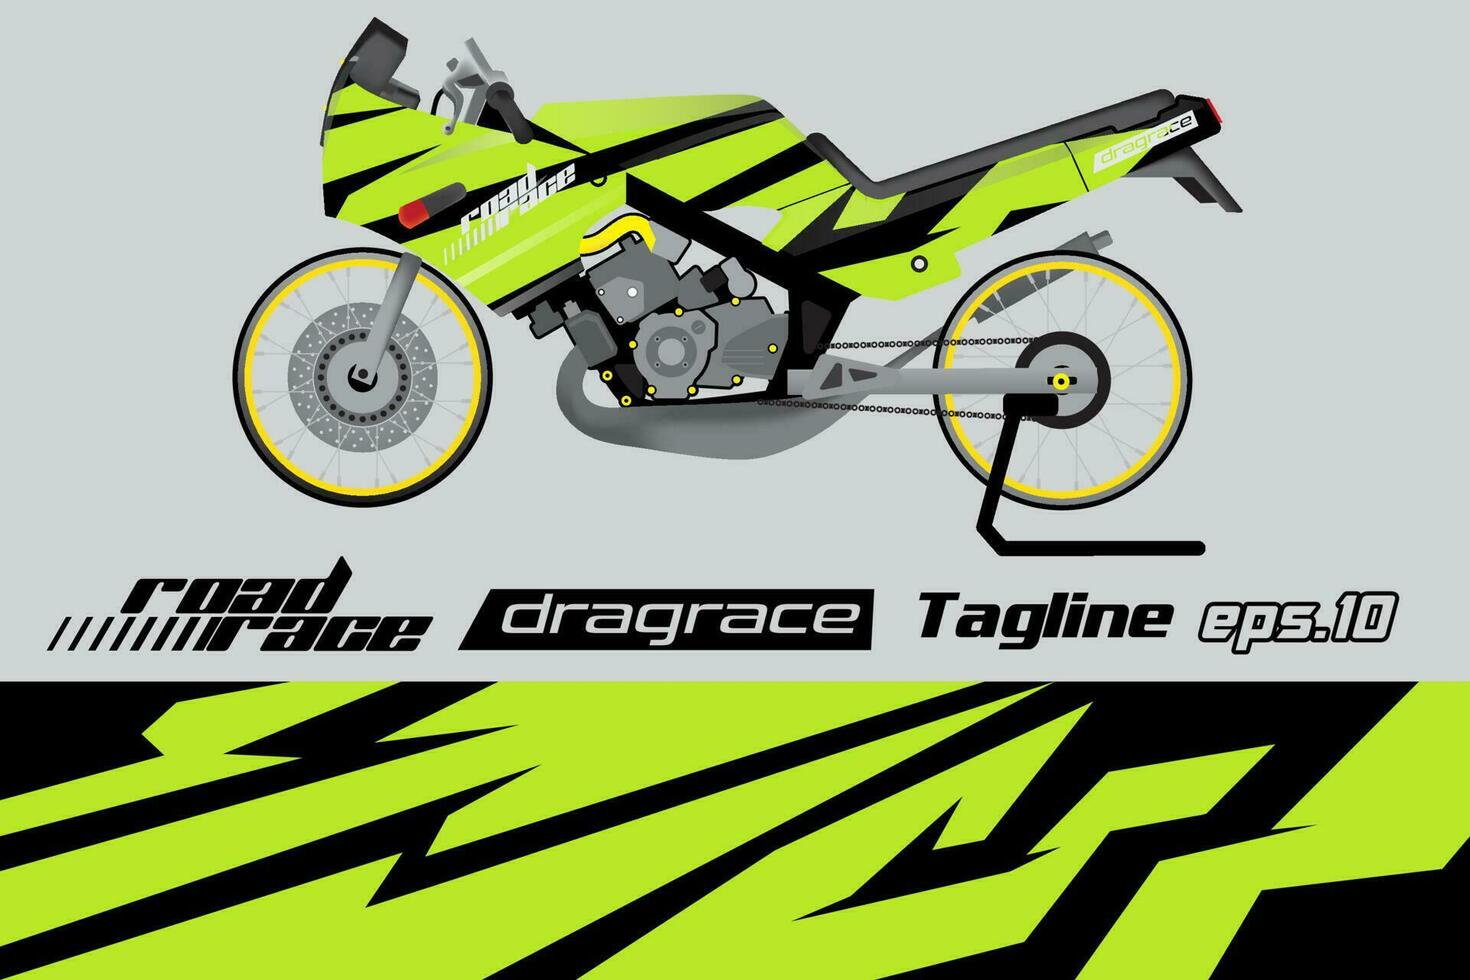 desain pembungkus stiker motor drag racing vektor penuh eps.10 vector